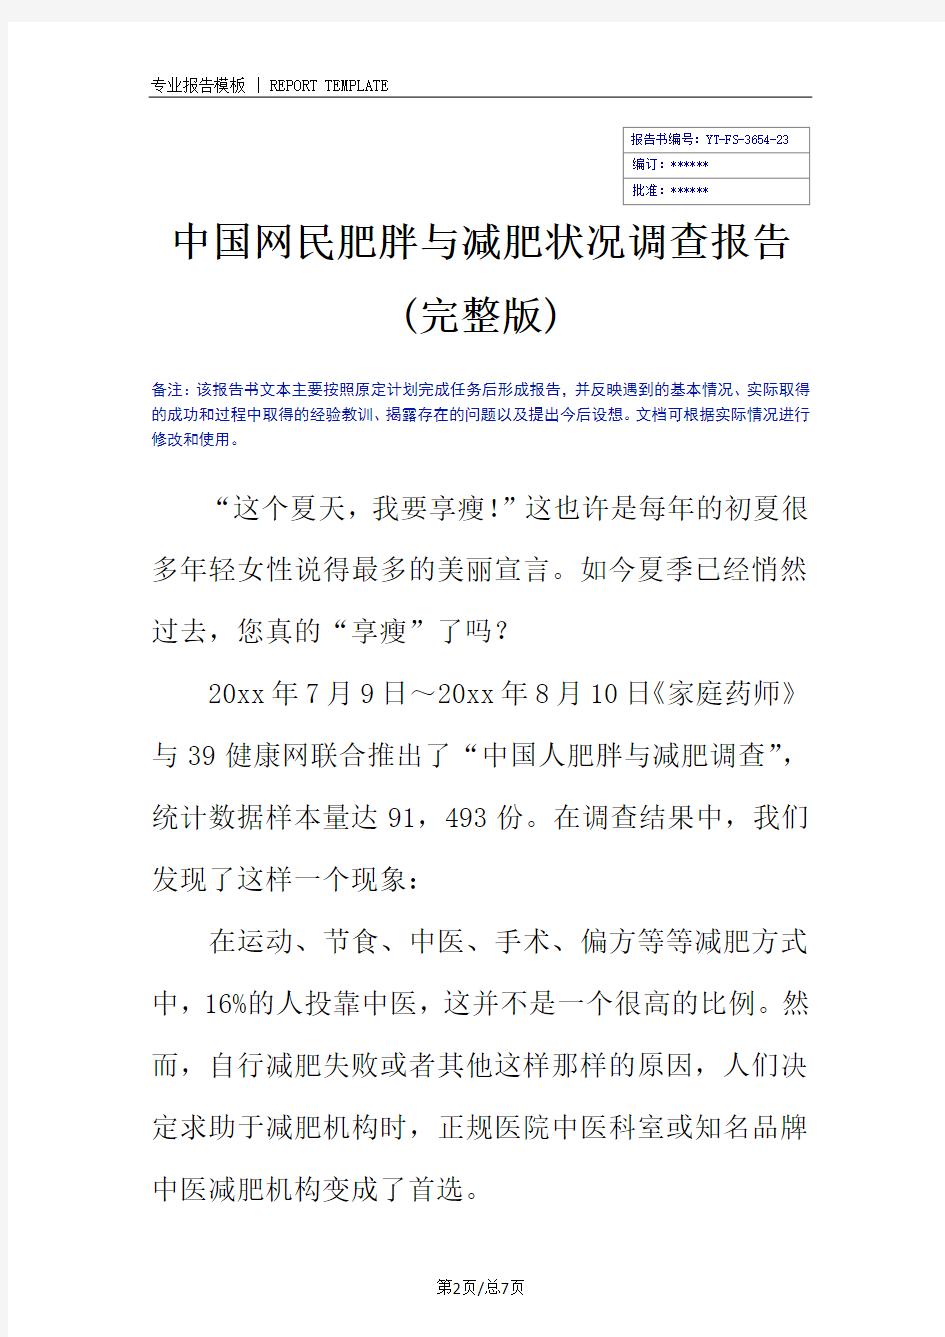 中国网民肥胖与减肥状况调查报告(完整版)